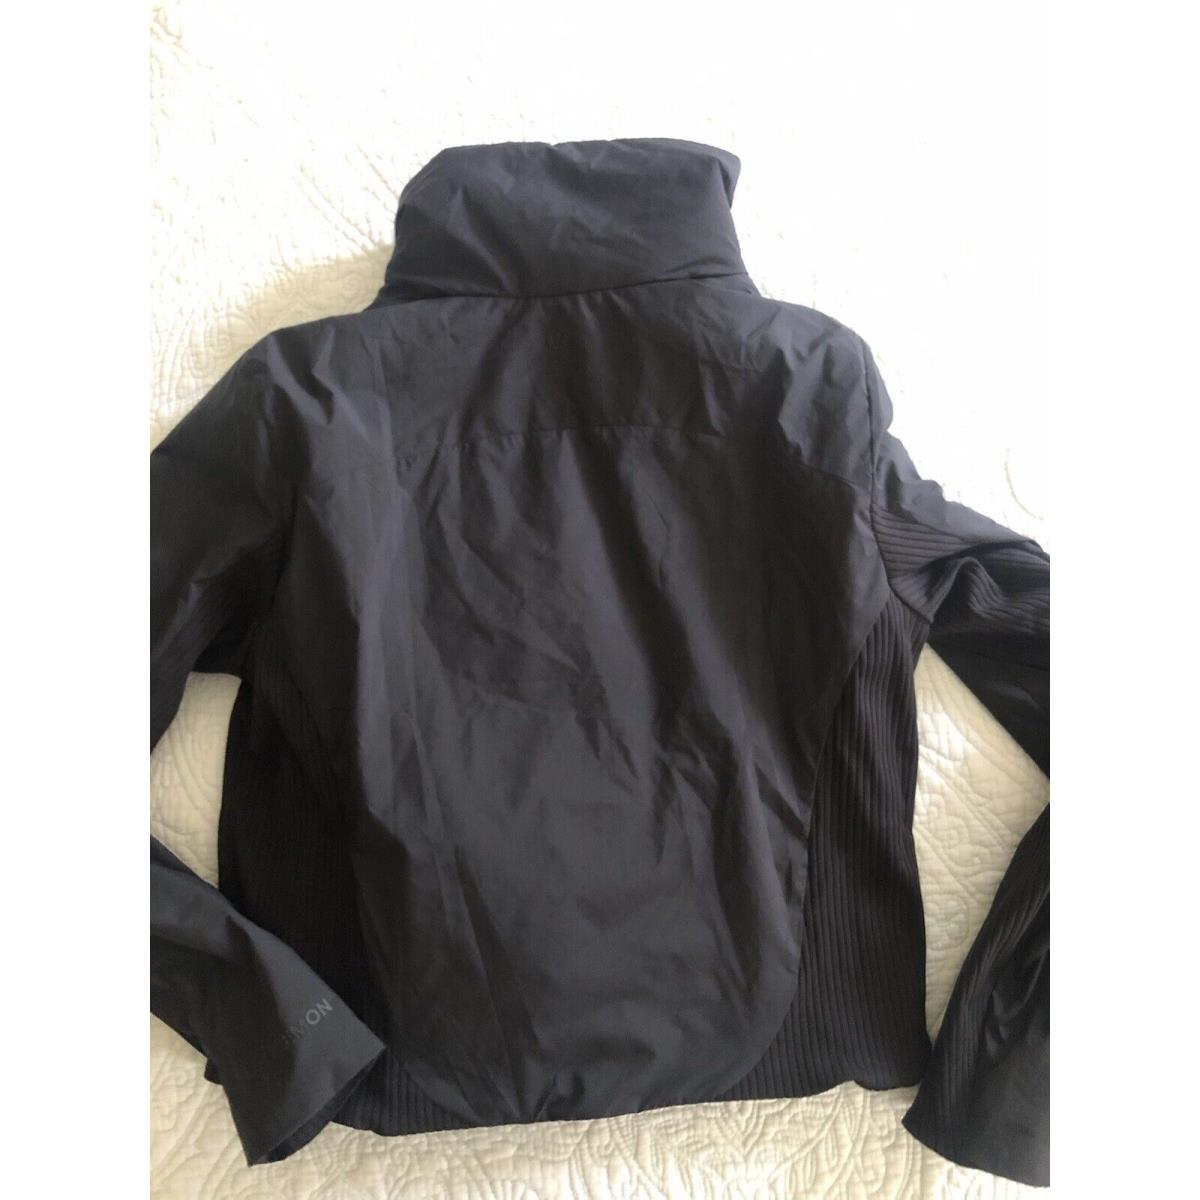 Lululemon Sleek City Primaloft Travel Jacket Black Women Size 10